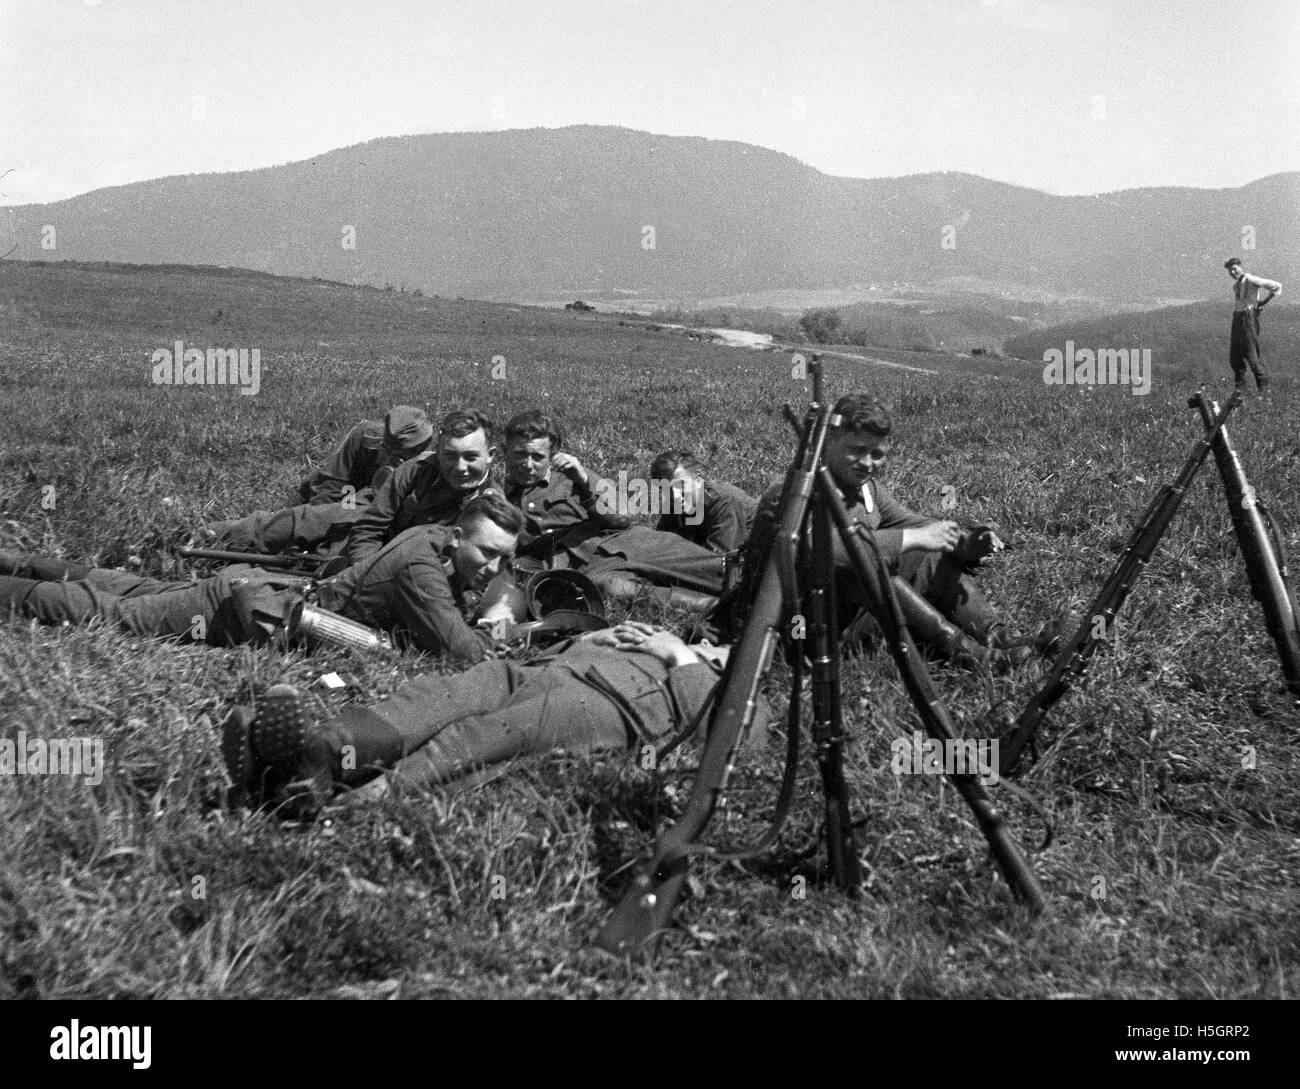 Les soldats allemands se détendre dans la région des Ardennes, la France pendant la Seconde Guerre mondiale Banque D'Images